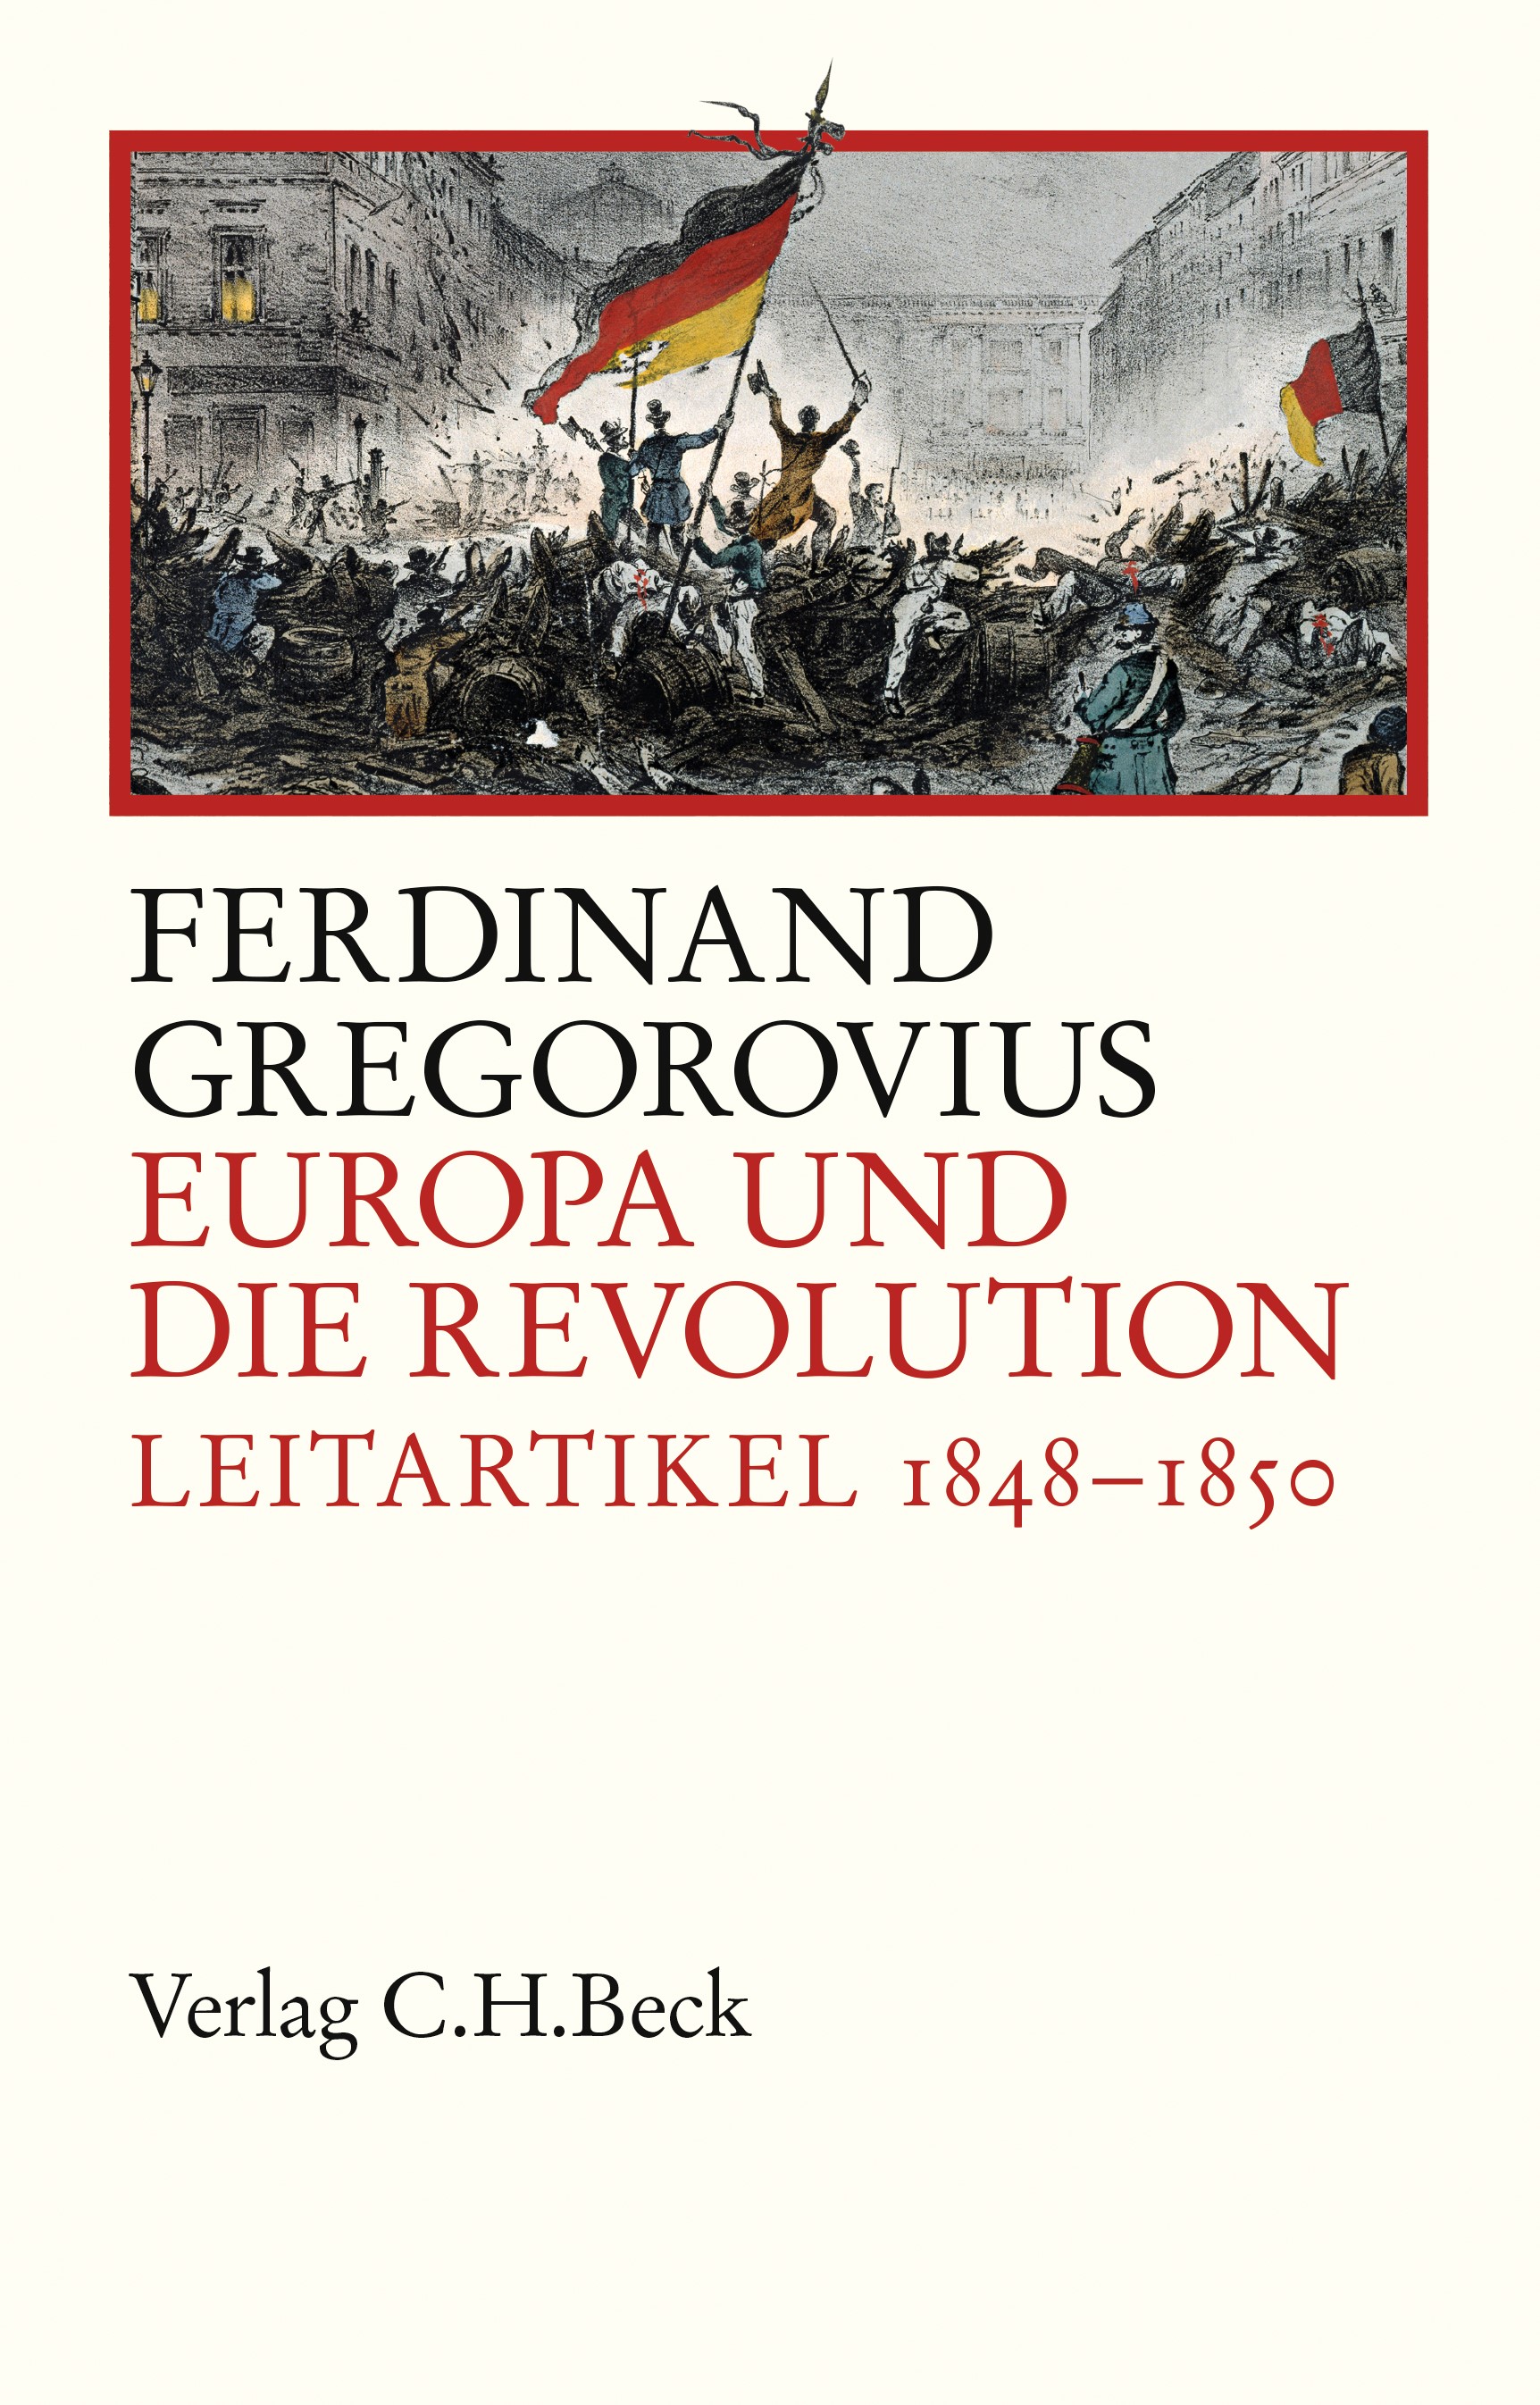 Cover: Gregorovius, Ferdinand, Europa und die Revolution